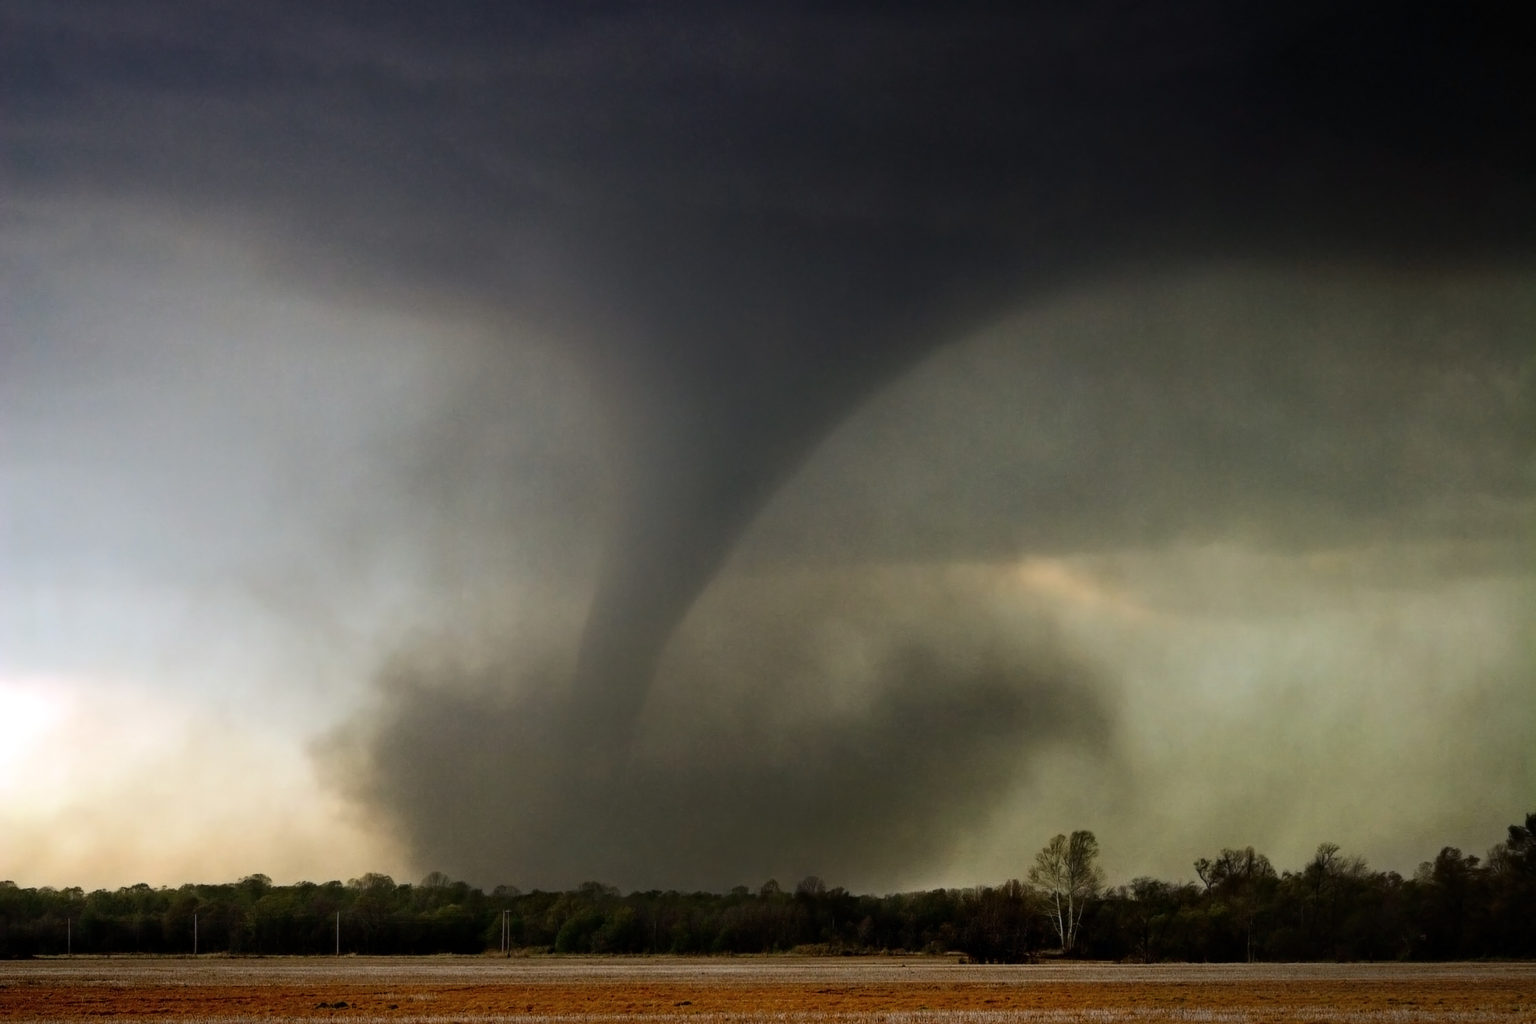 A tornado sweeps across an open field